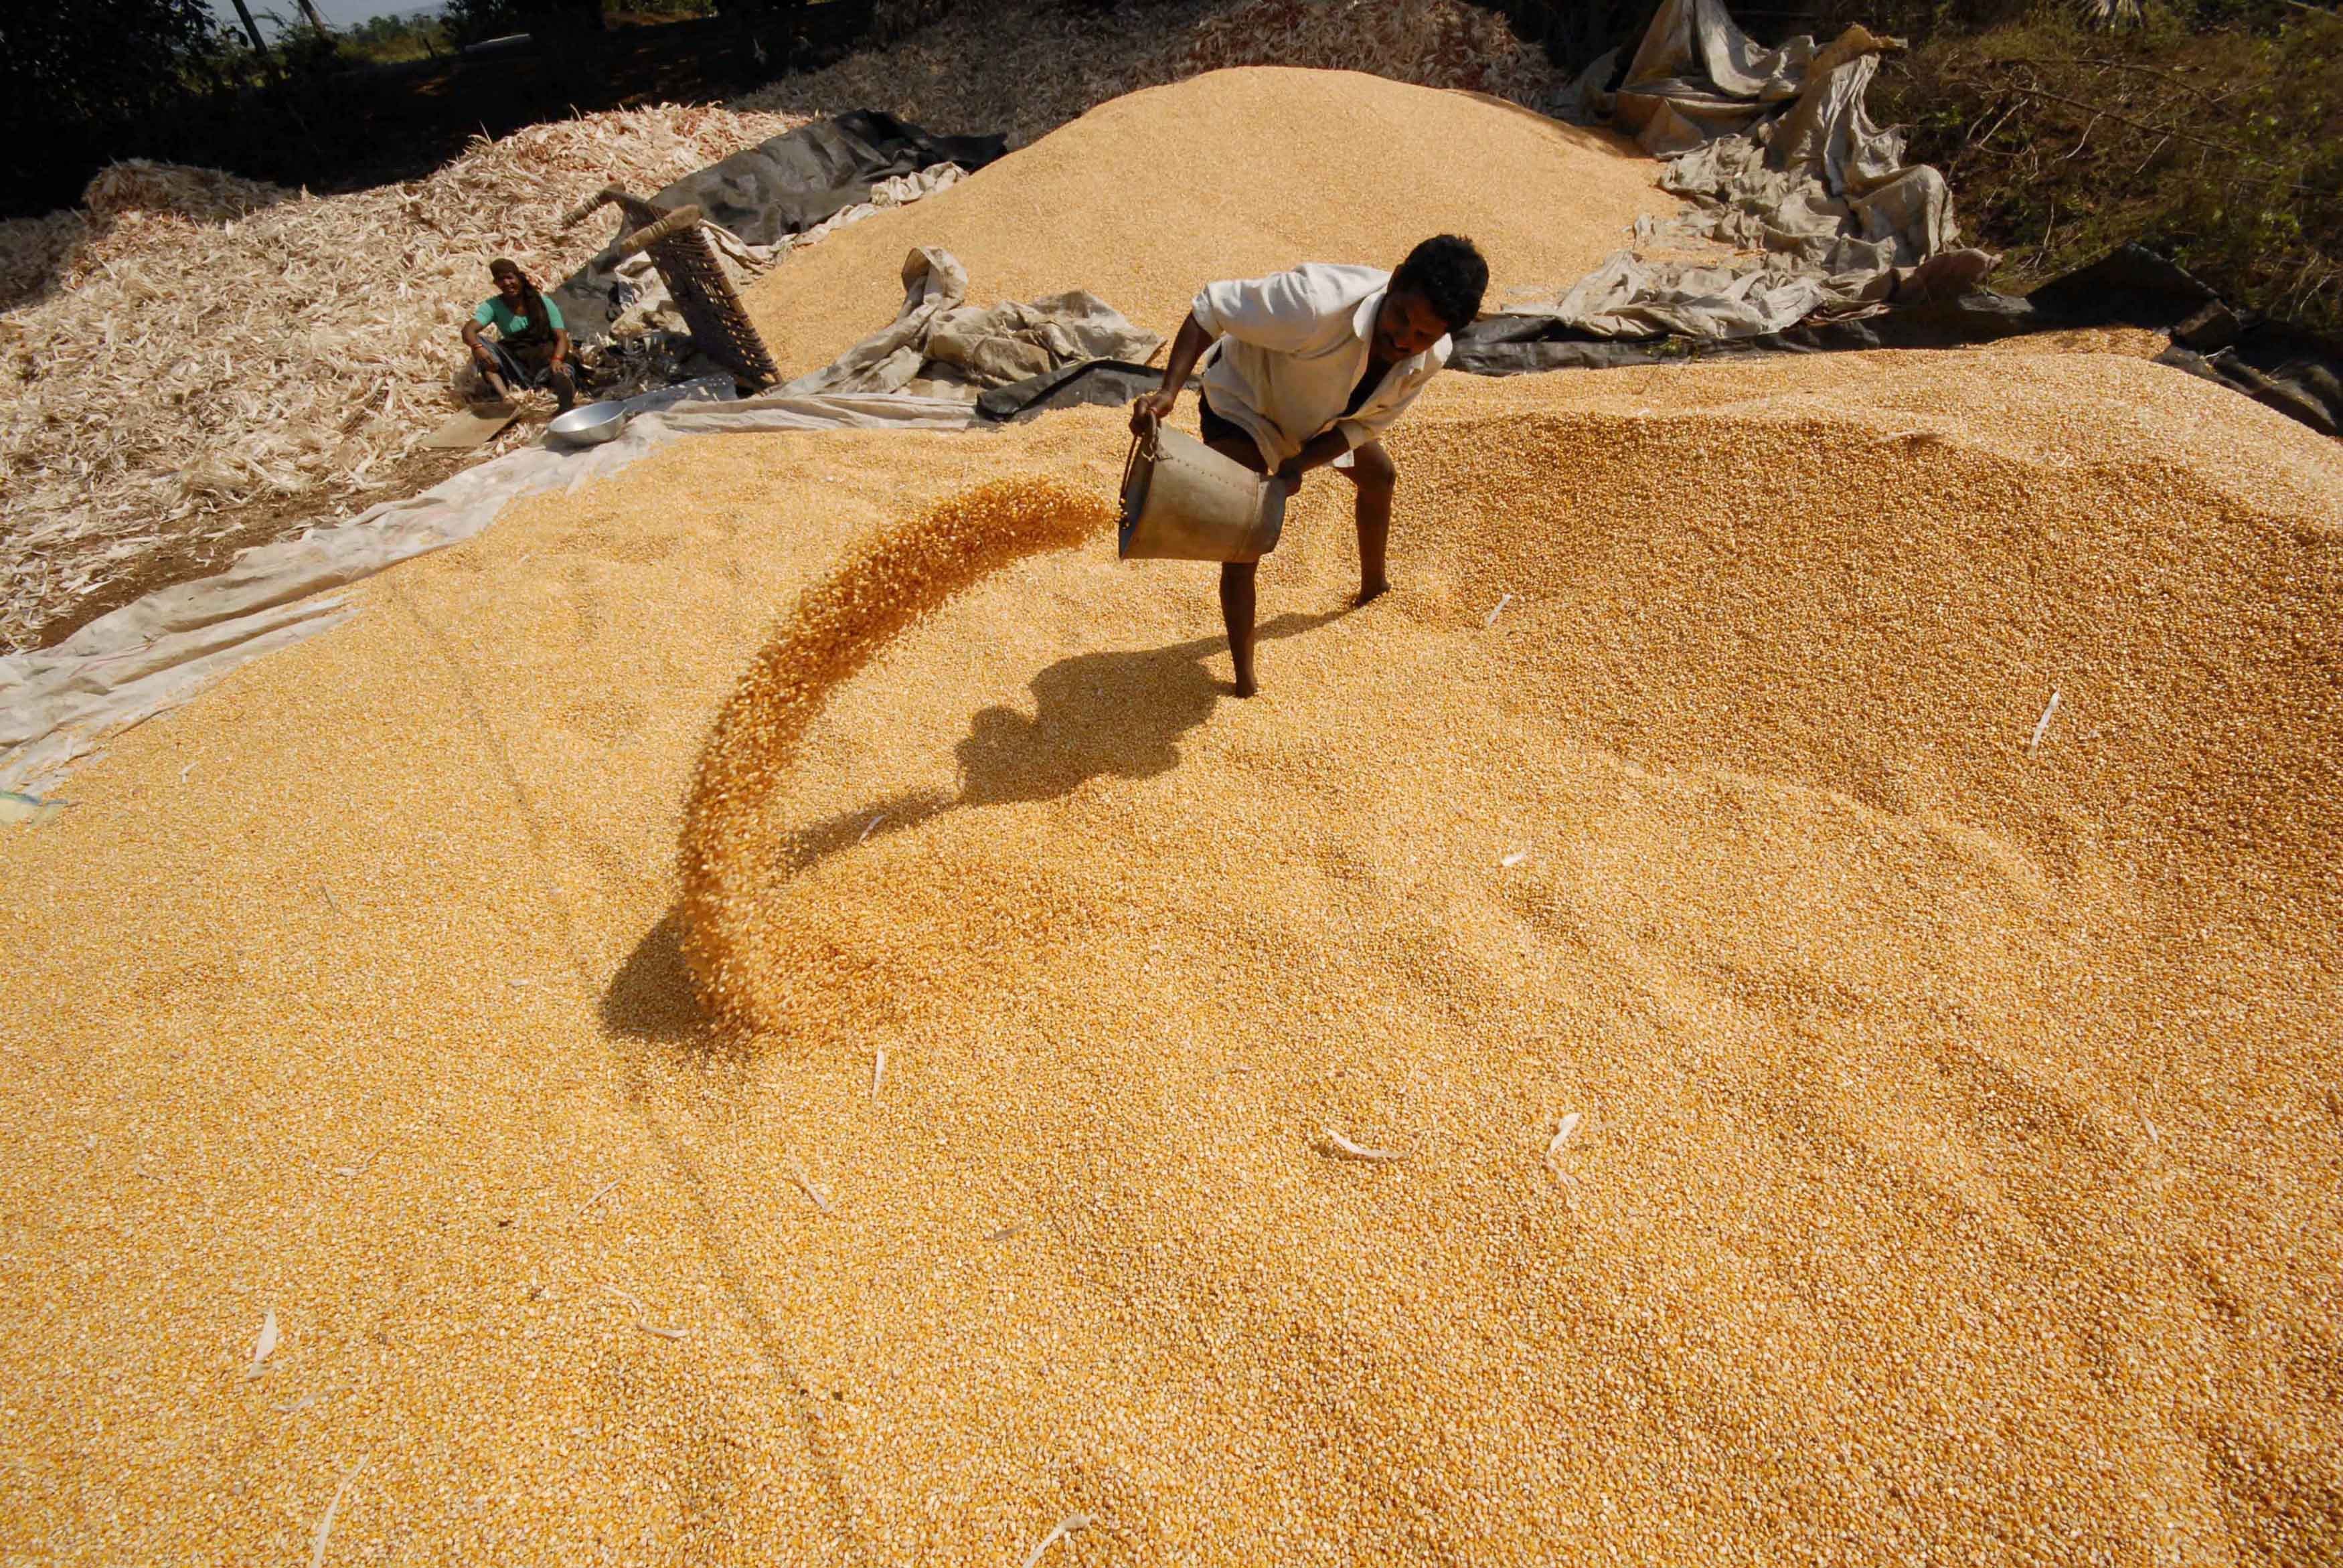 Trabalhador sobre estoque de milho na Índia  (Foto: REUTERS/Krishnendu Halder)